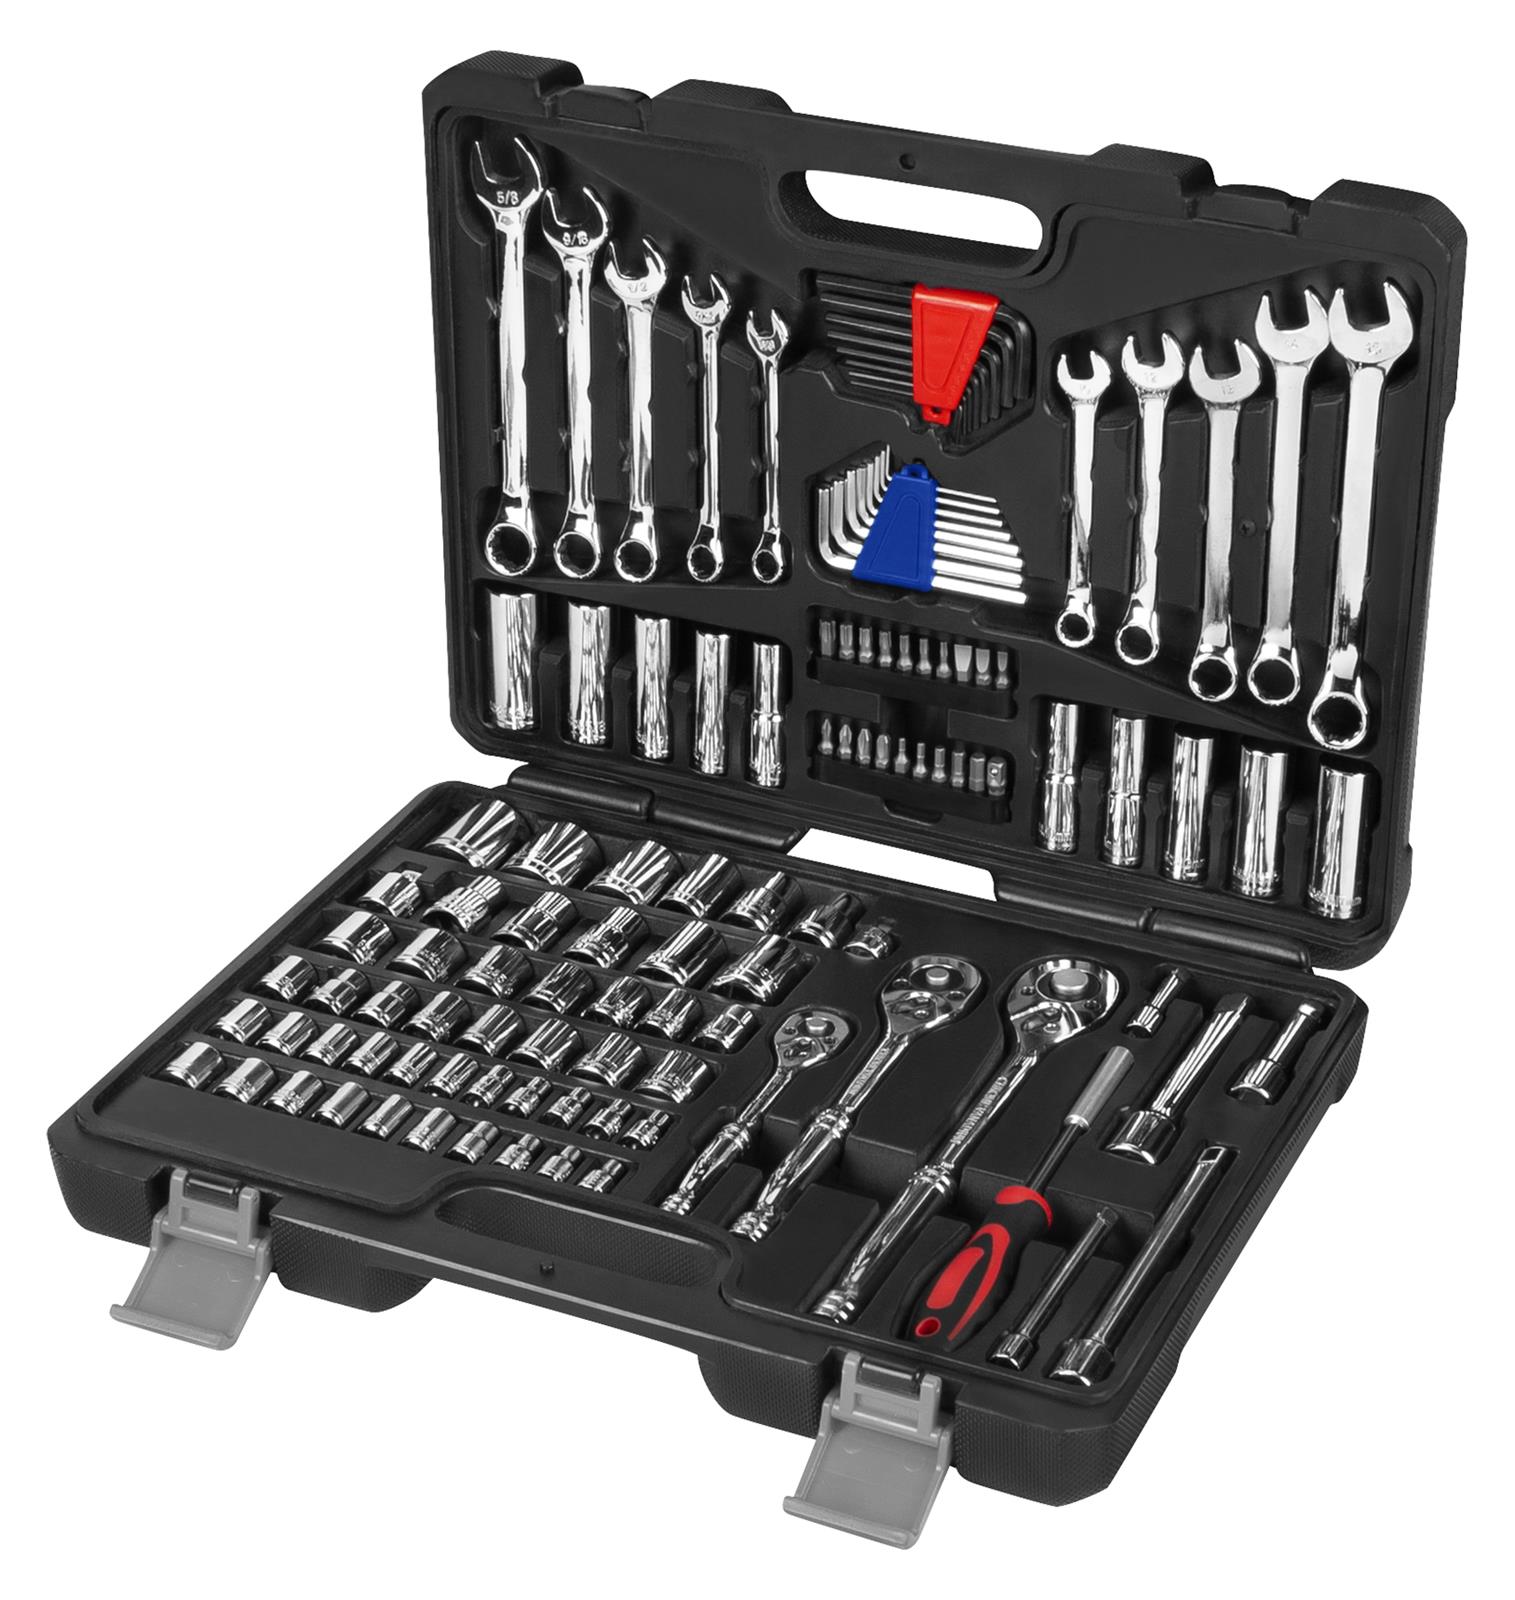 Набор инструментов FPV. JOBSMART 312 piece Mechanic Tool Set. Спец приспособления и инструменты механика.